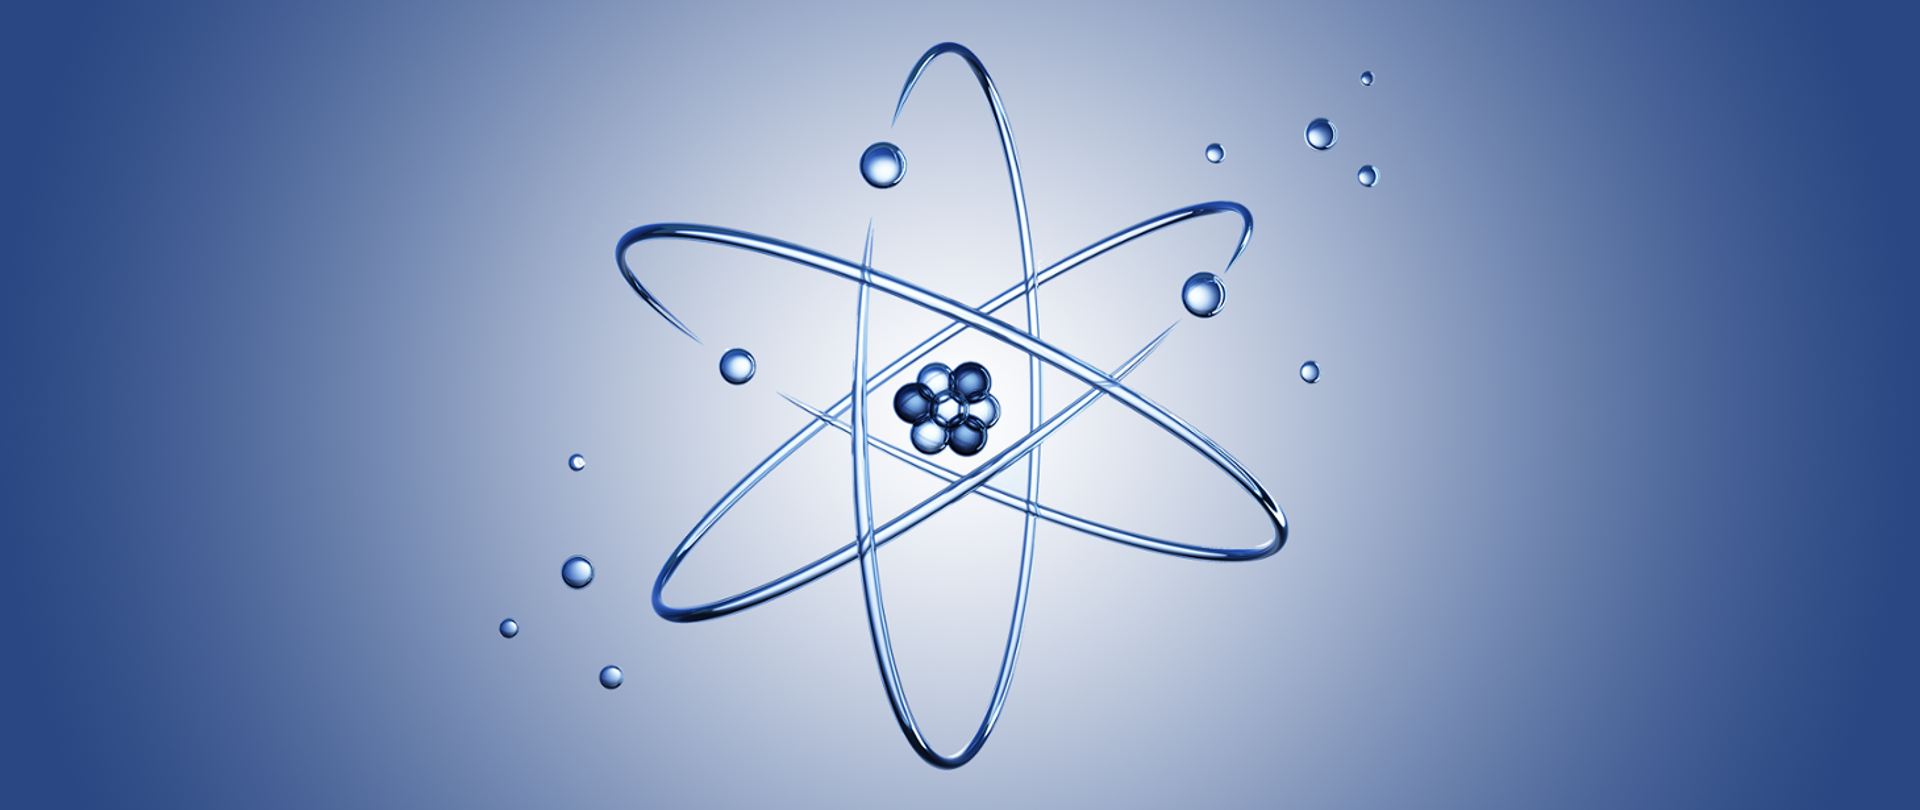 zdjęcie przedstawiające jądro atomowe